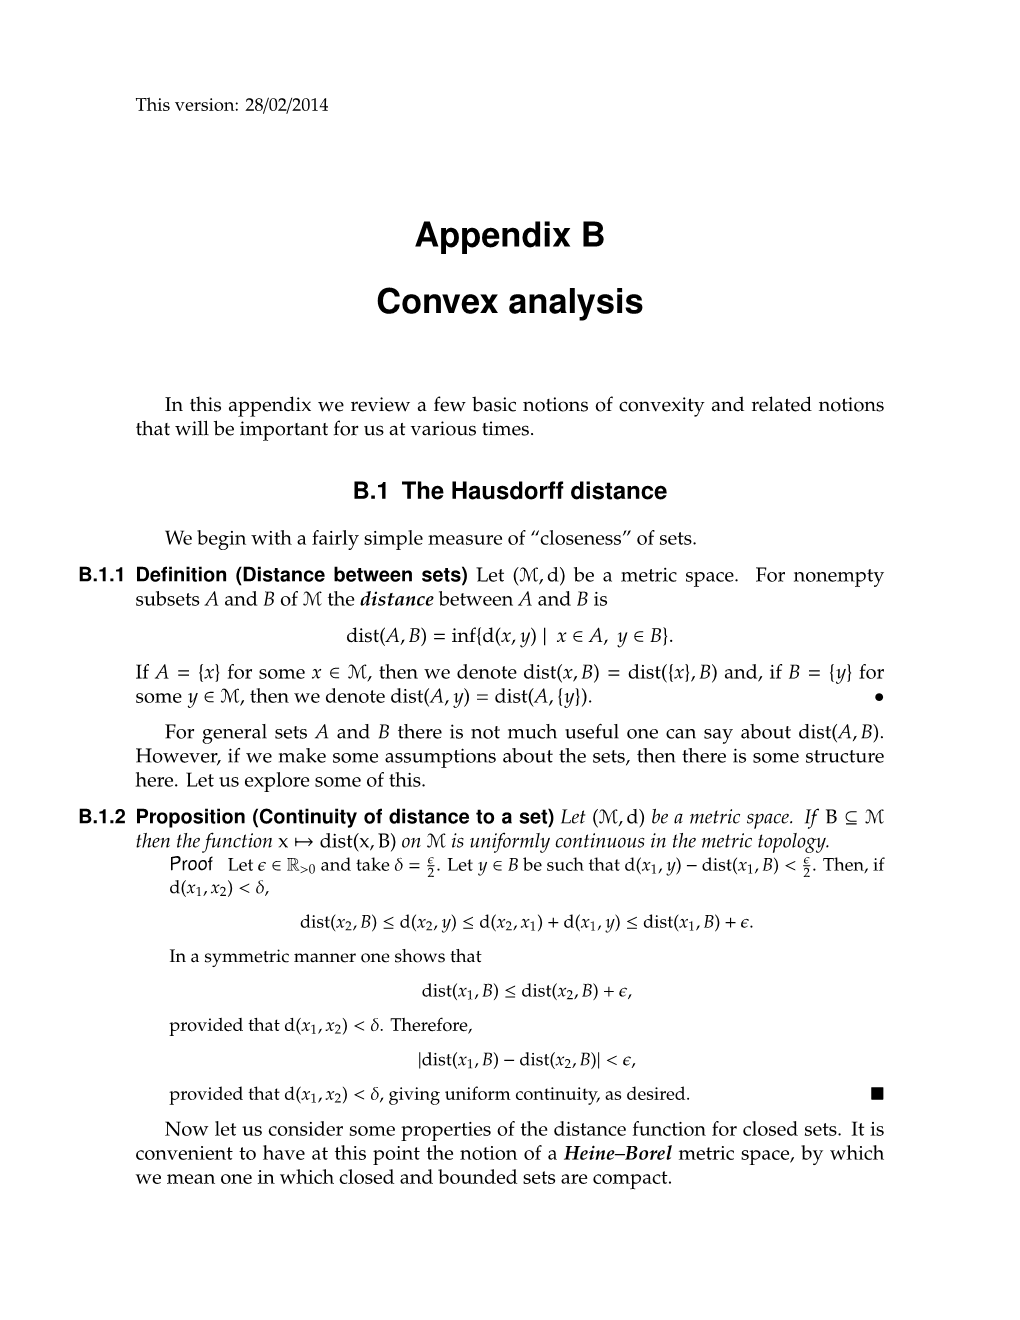 Appendix B Convex Analysis